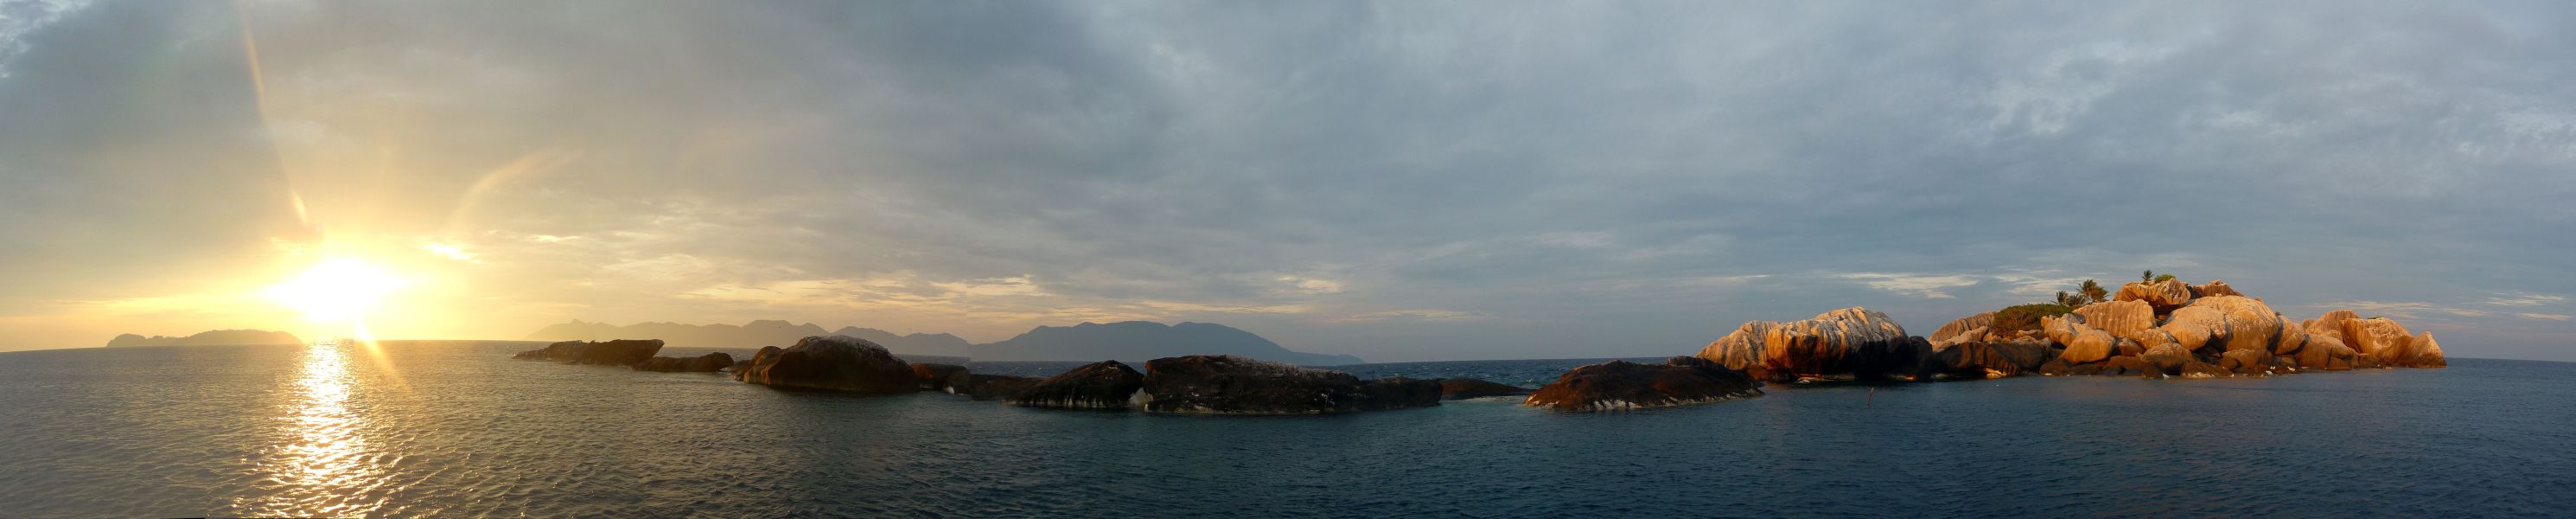 Pulau Labas - Ein bisschen Fels mitten im Meer.